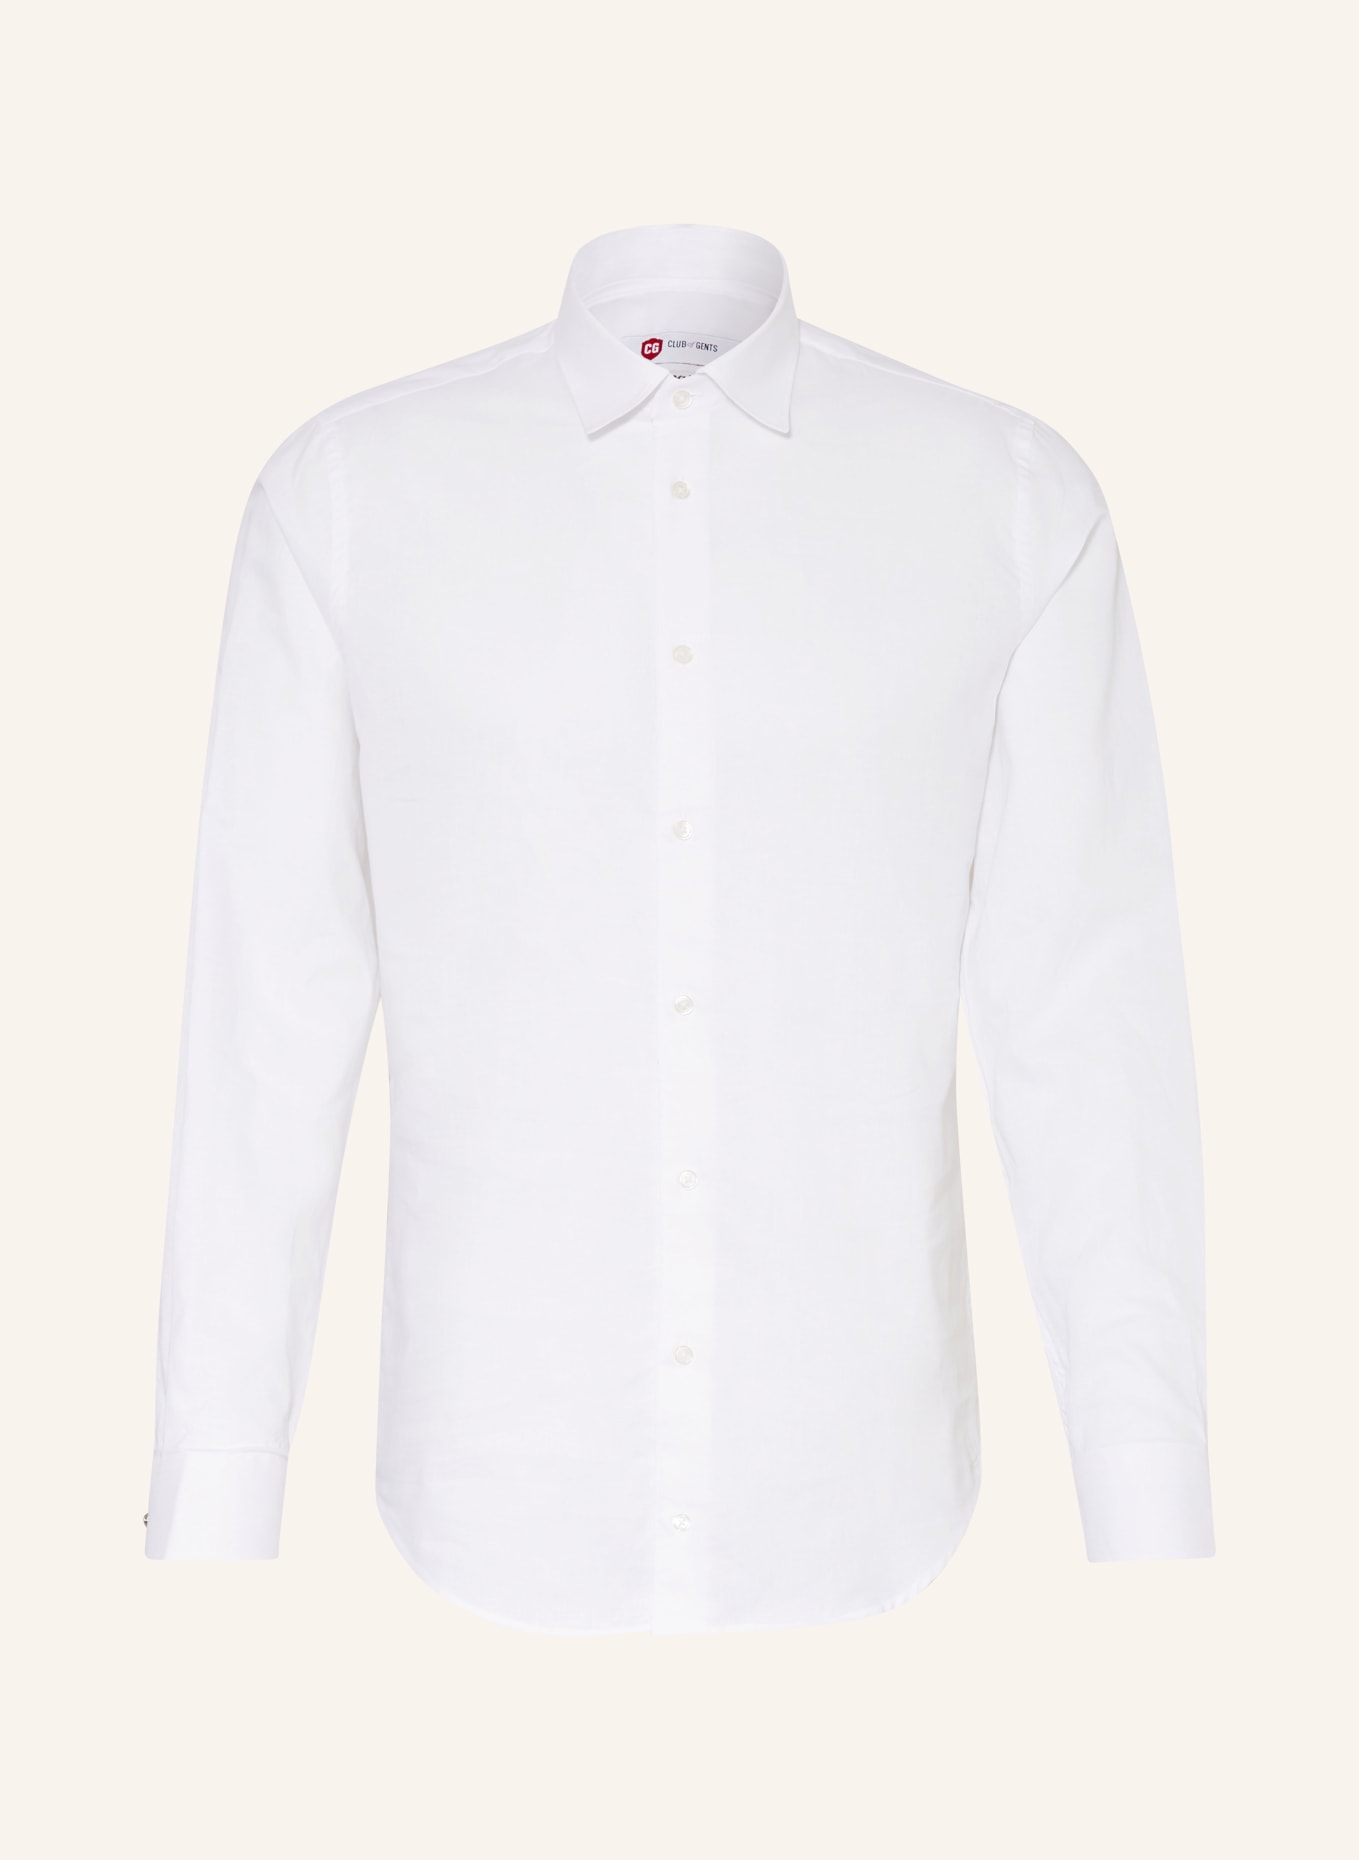 CG - CLUB of GENTS Hemd PLUTO Slim Fit mit Leinen und abnehmbarem Kragen, Farbe: WEISS (Bild 1)